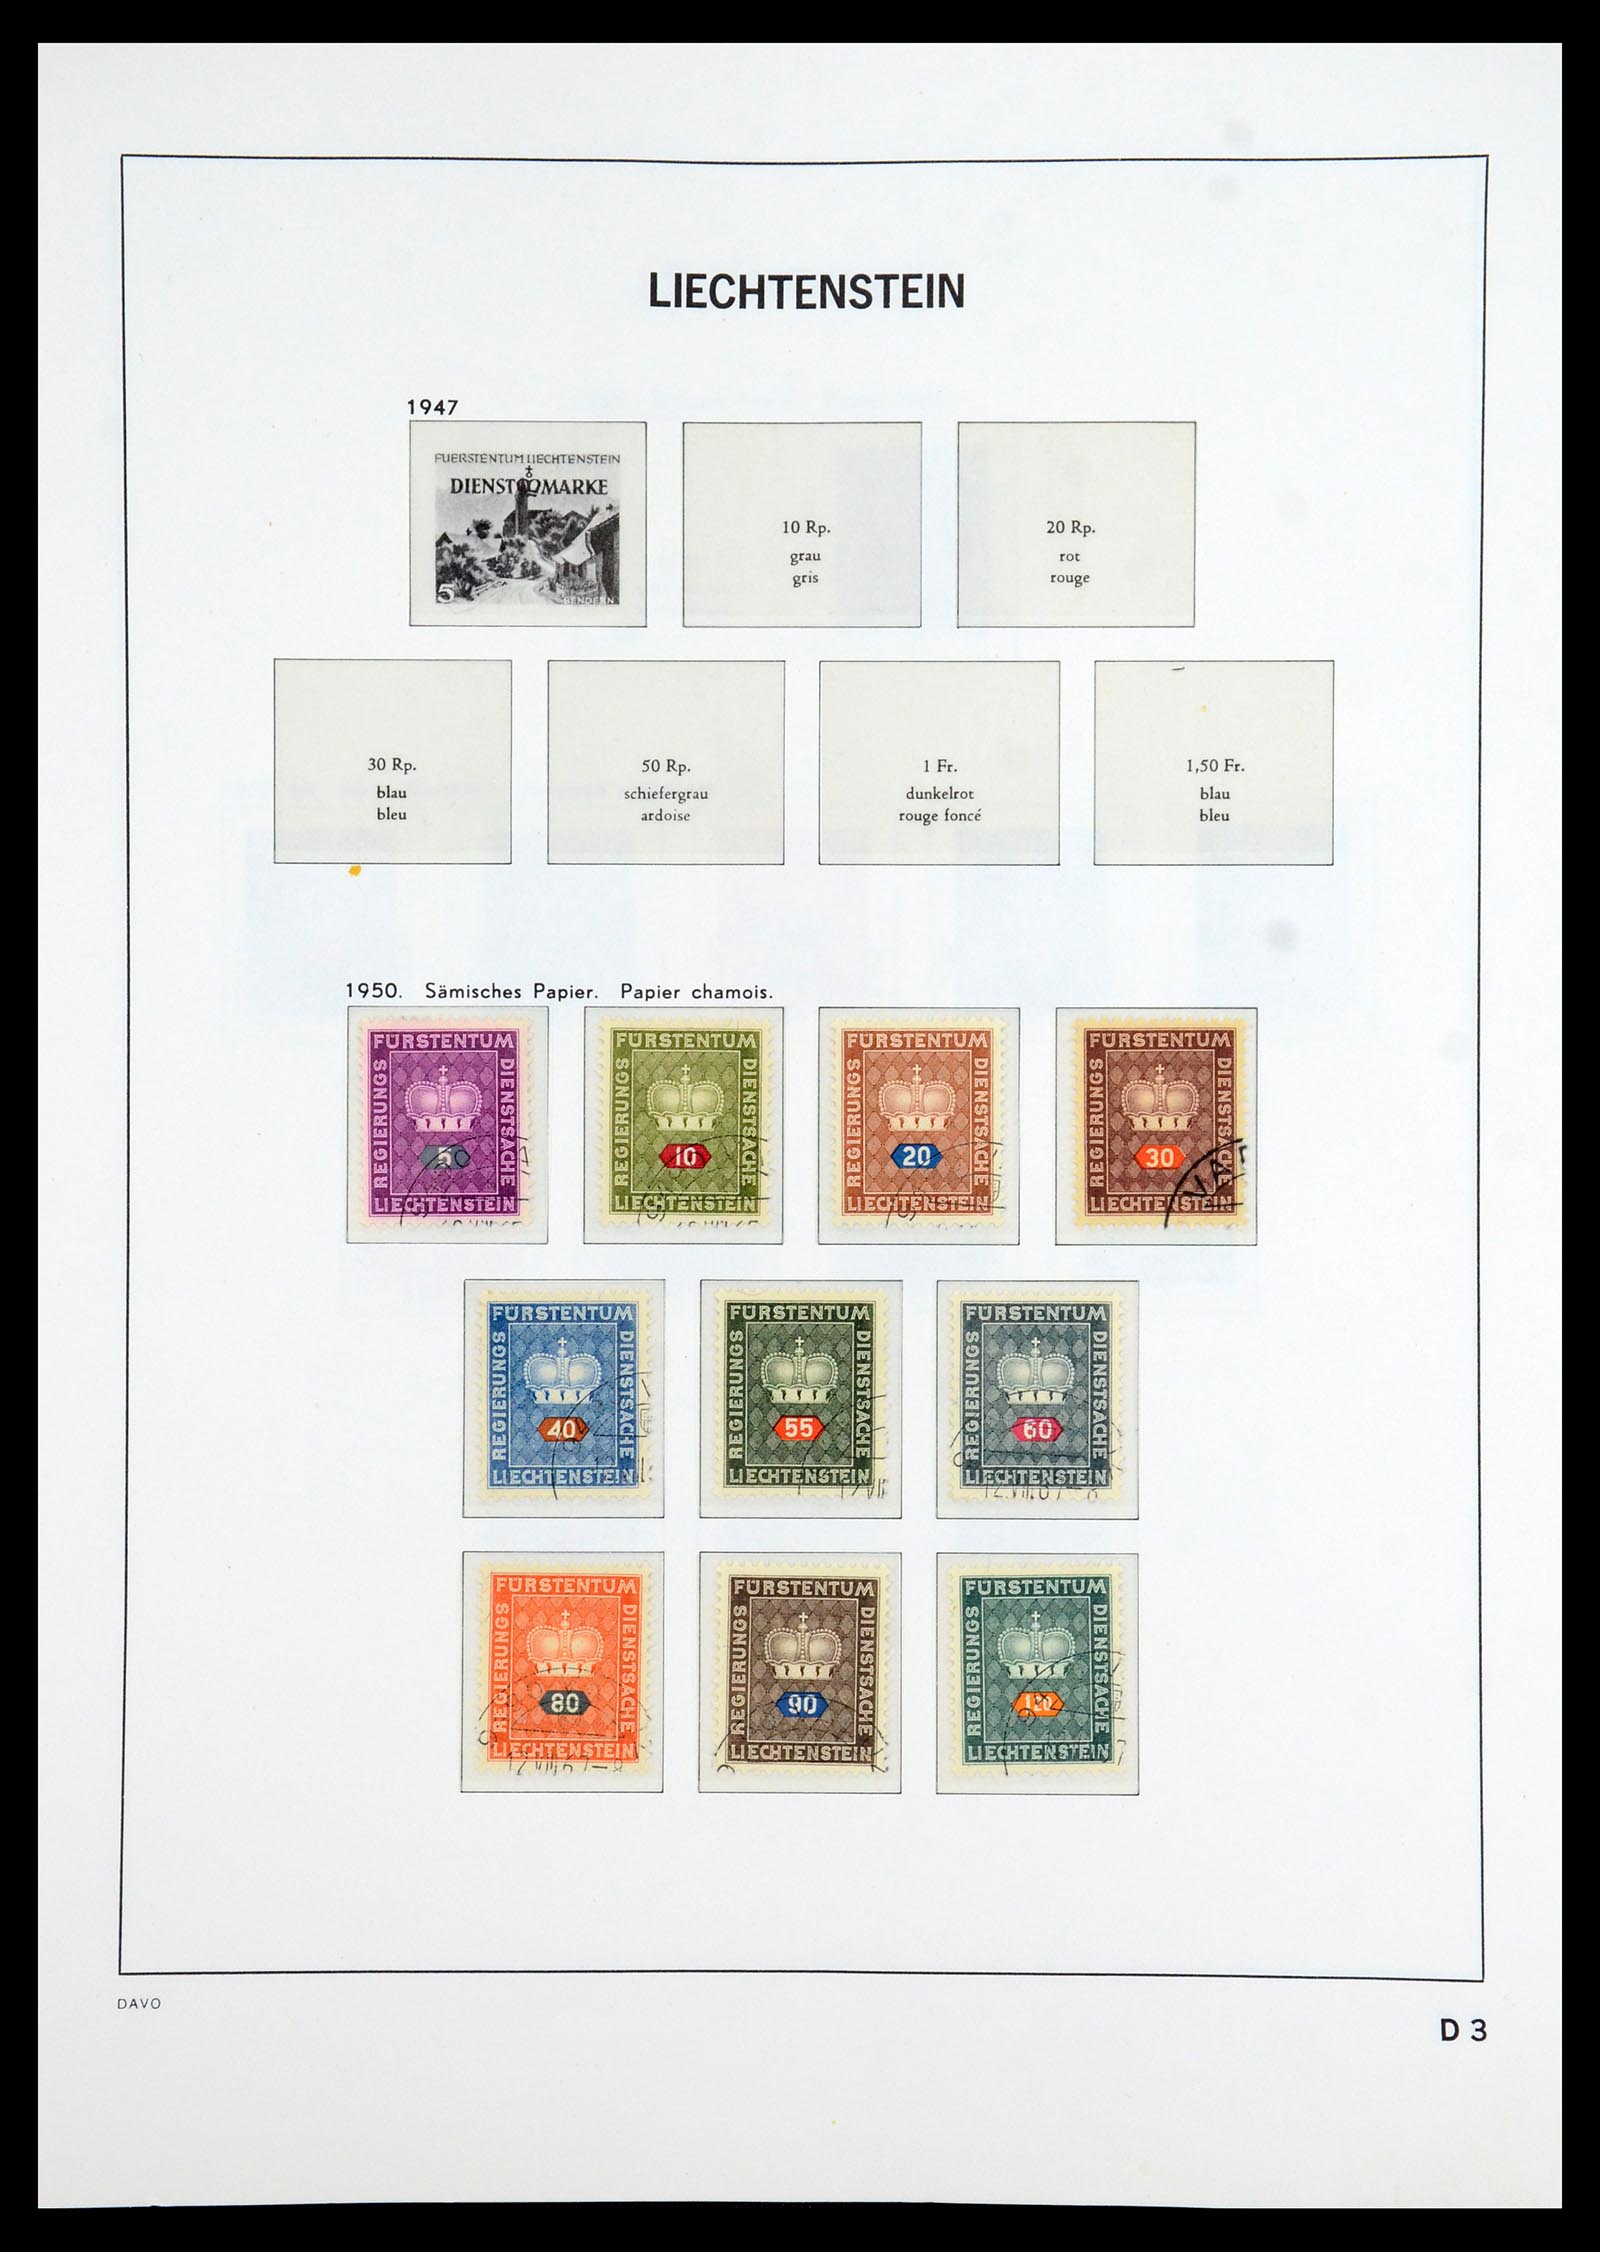 35896 101 - Stamp Collection 35896 Liechtenstein 1912-1990.